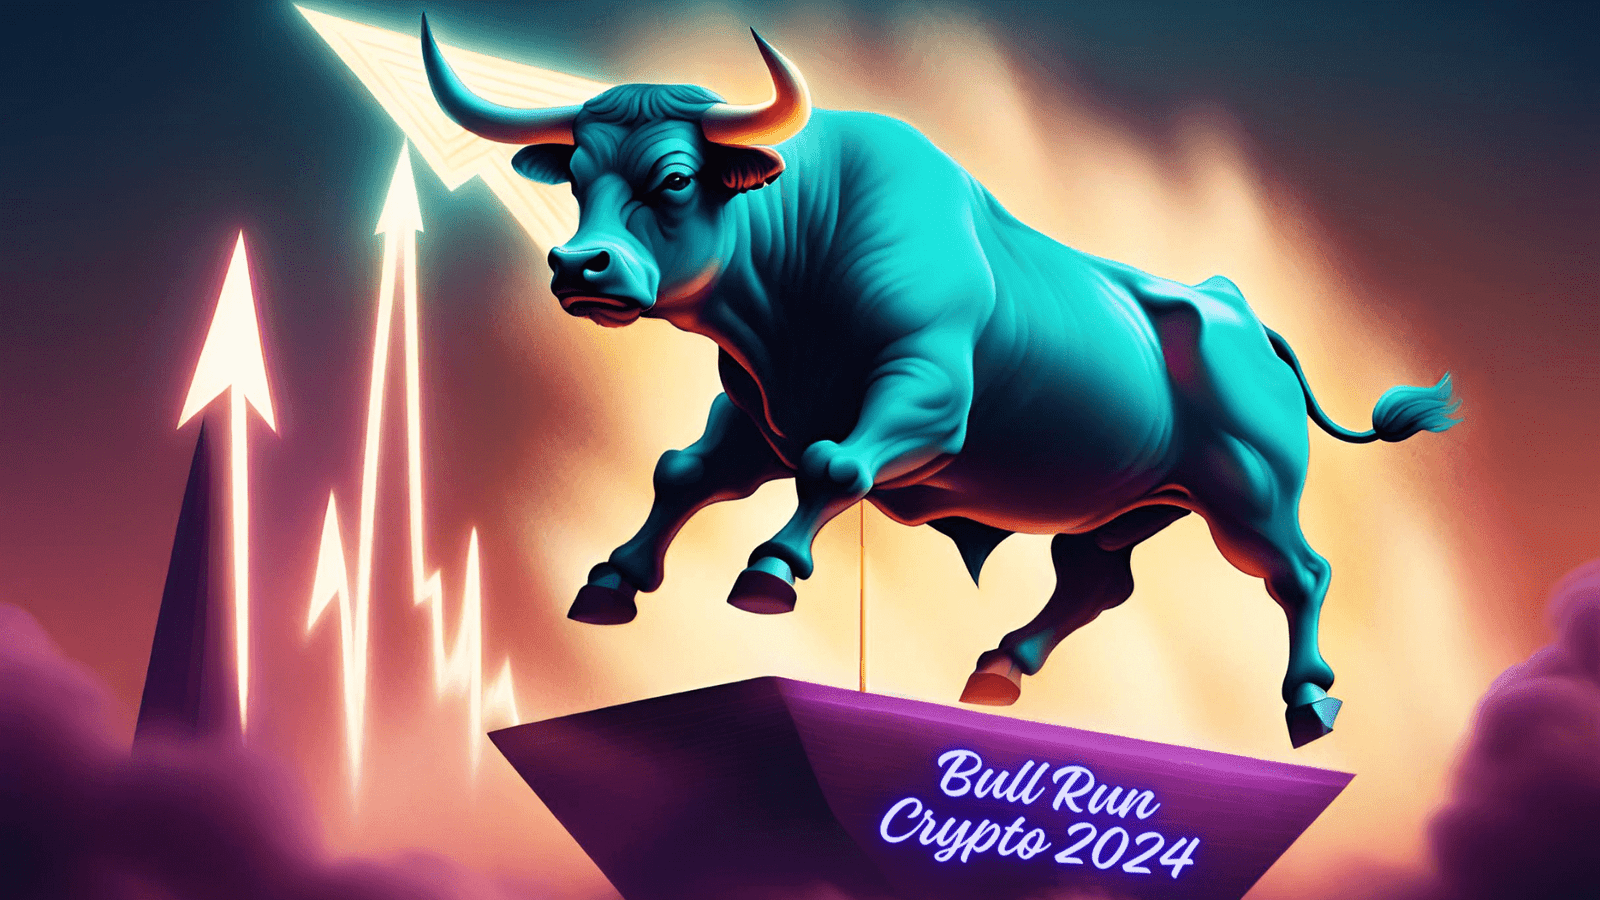 Bull Run Crypto 2024